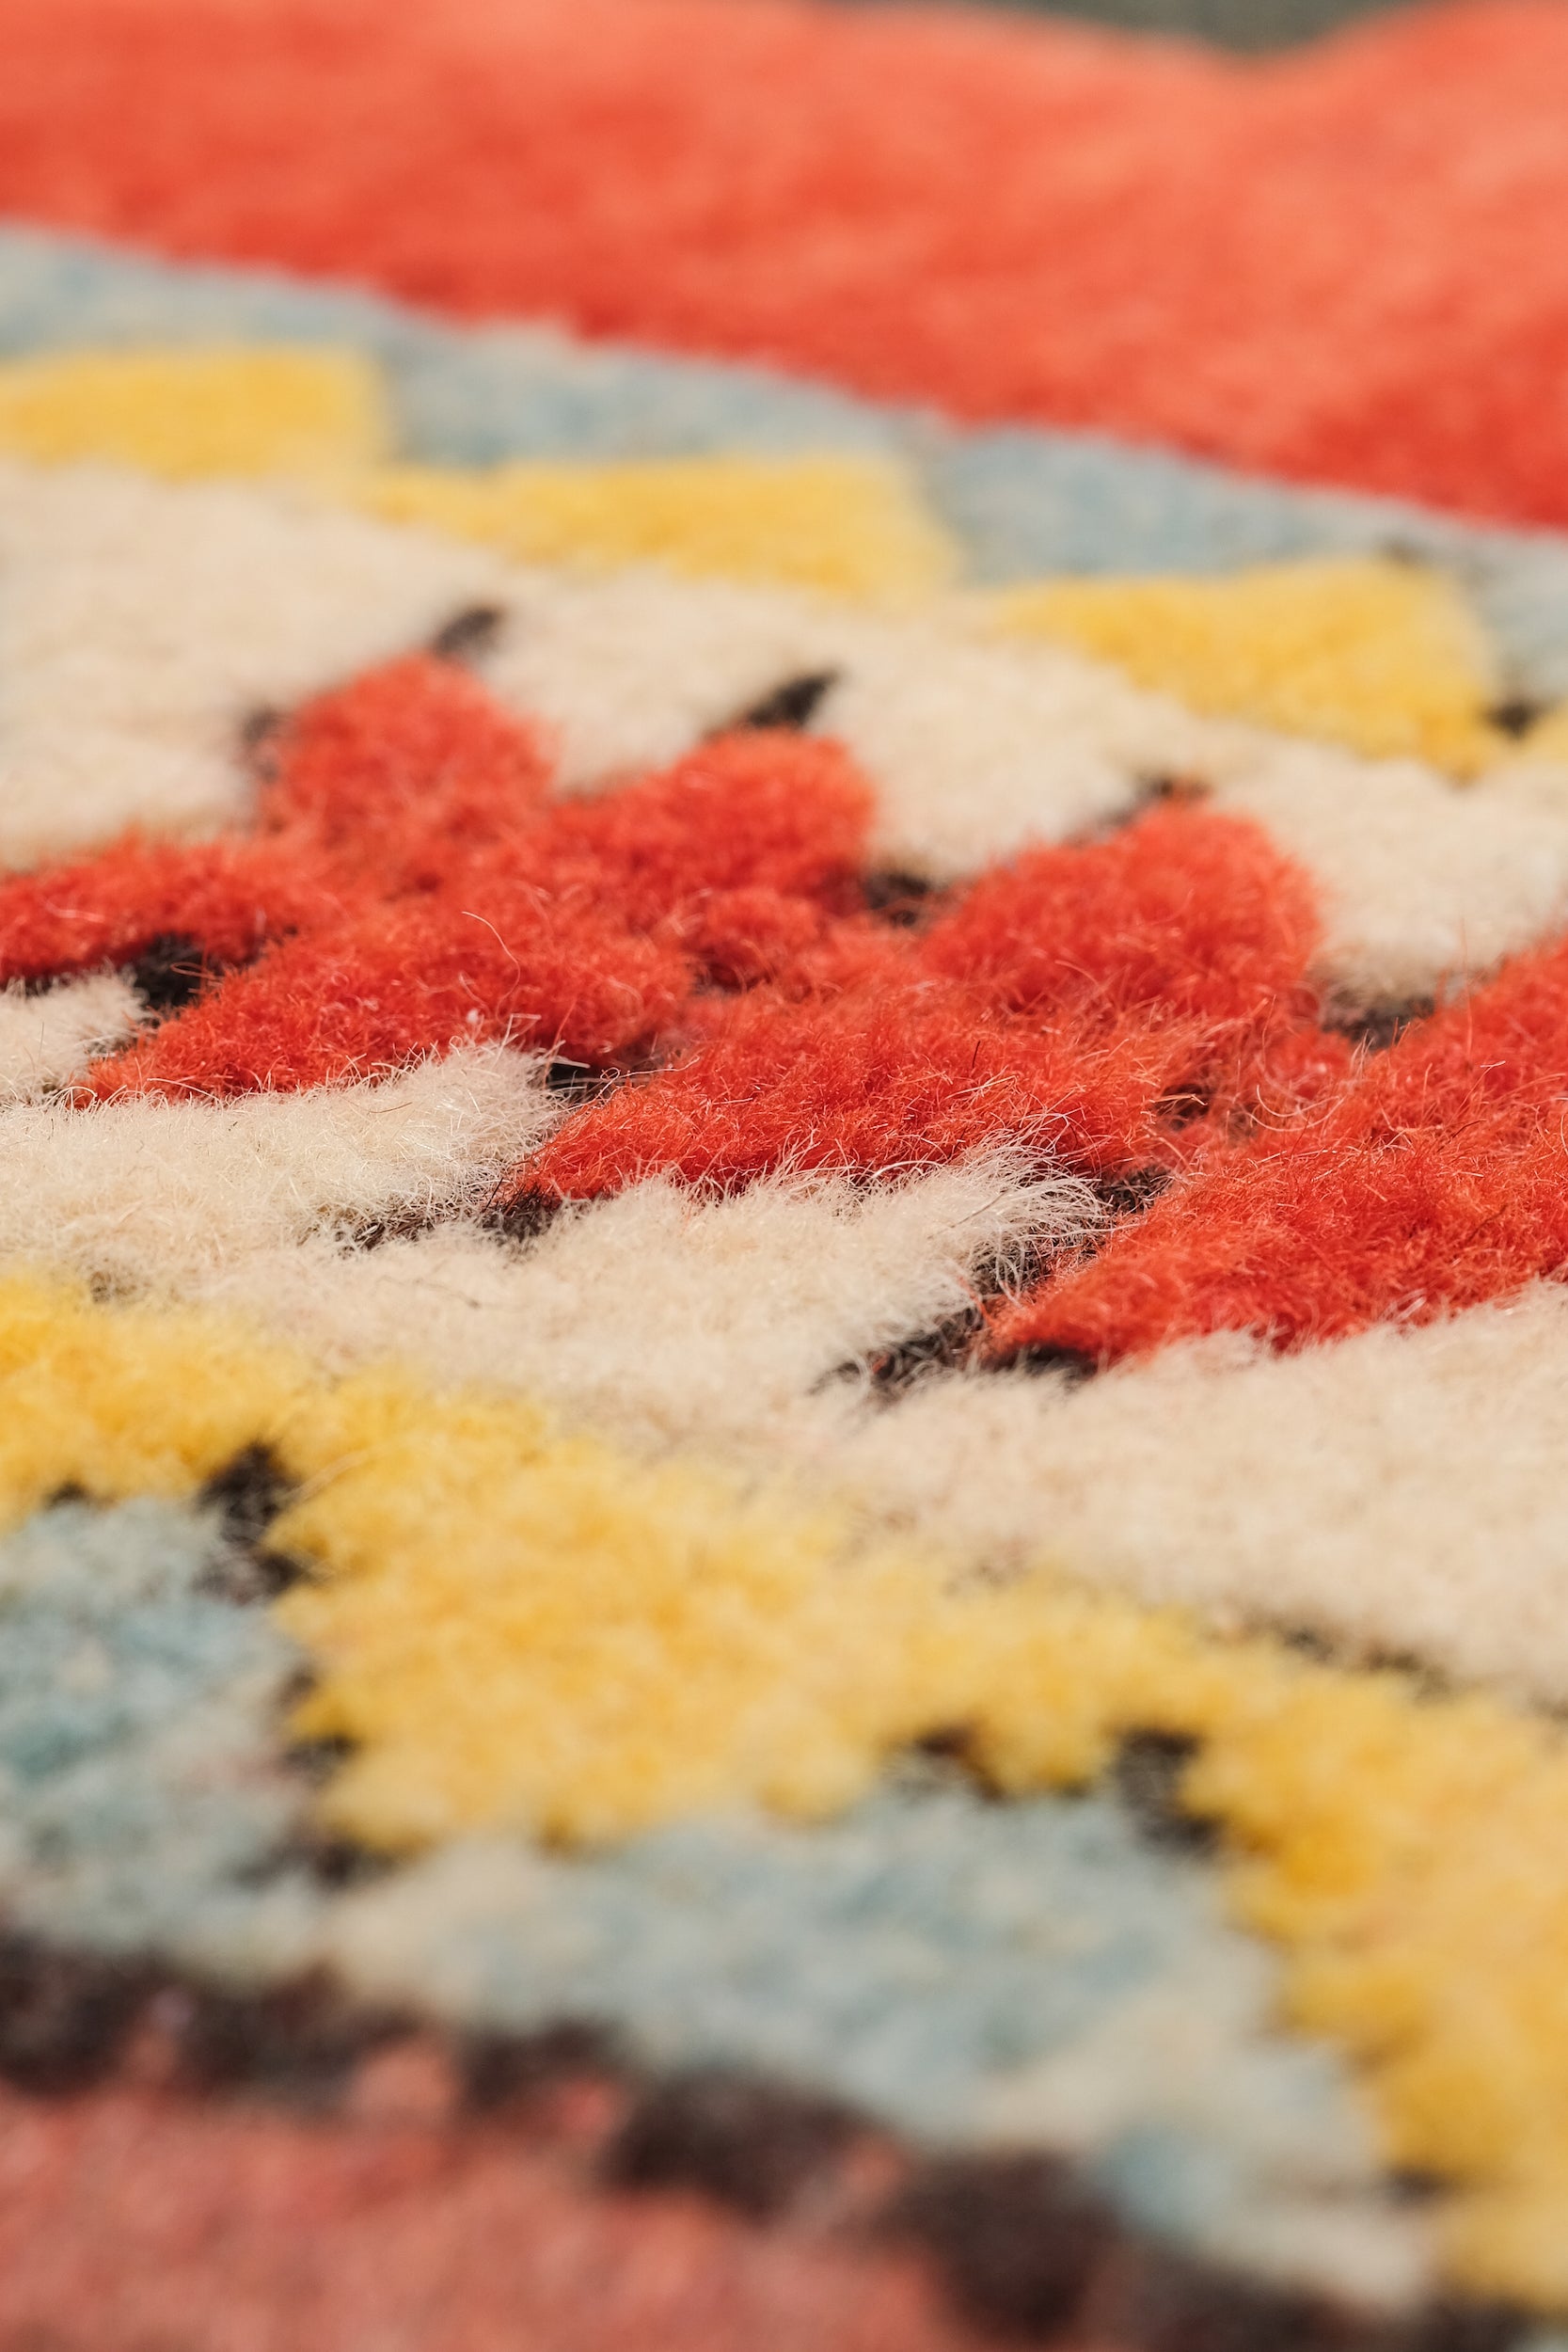 Kars Kazak Carpet, Turkey, 40s